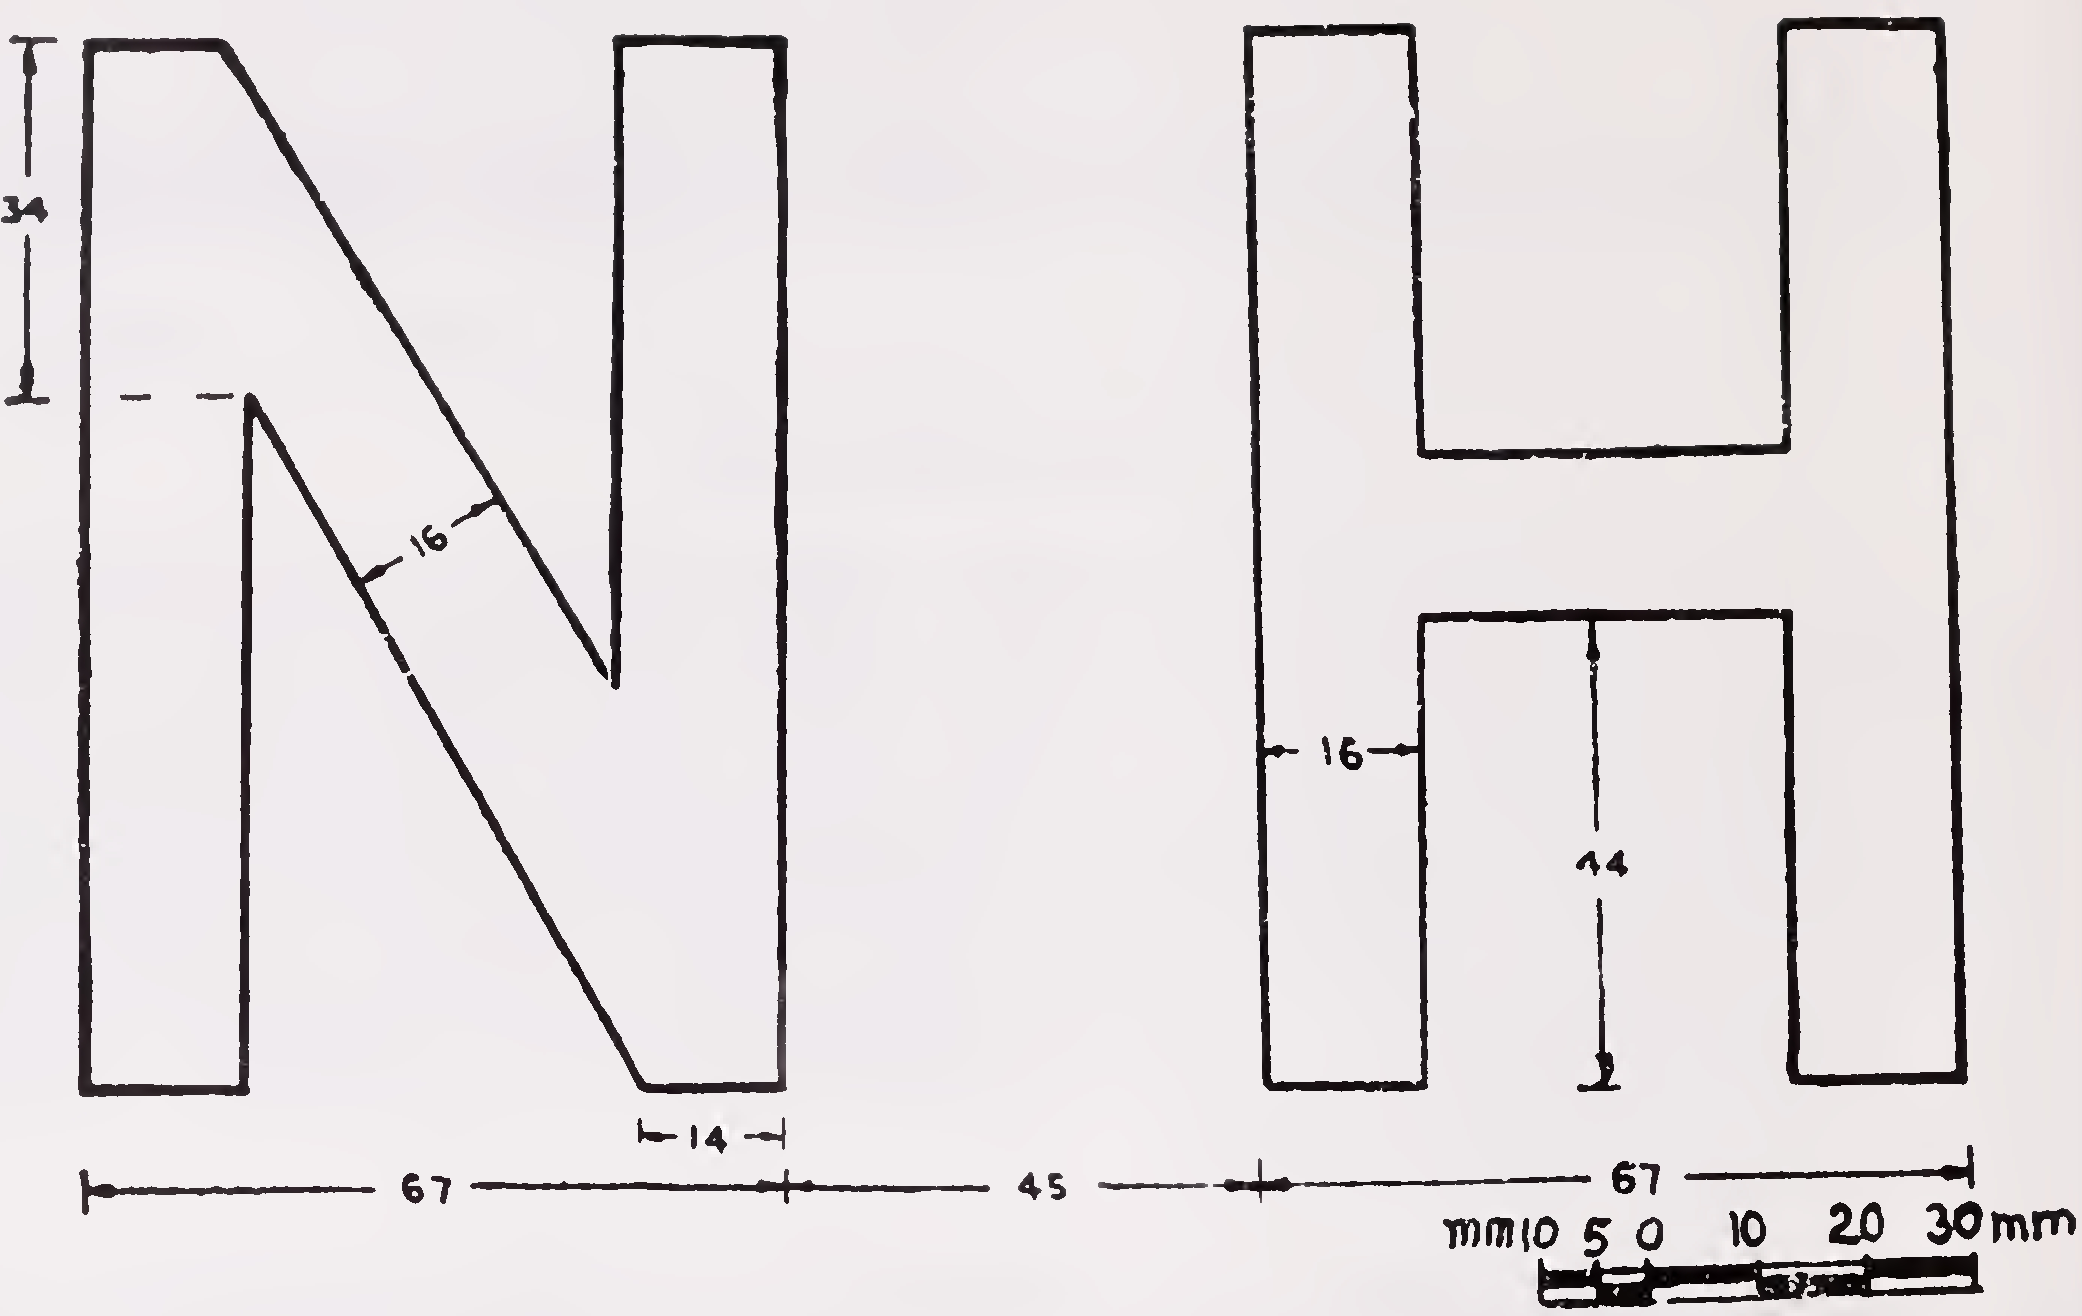 ಅಂಜೂರ -1: 100 ಎಂಎಂ ಎತ್ತರದ ಸ್ಟ್ಯಾಂಡರ್ಡ್ ಲೆಟರ್ಸ್ ಎನ್ ಮತ್ತು ಎಚ್